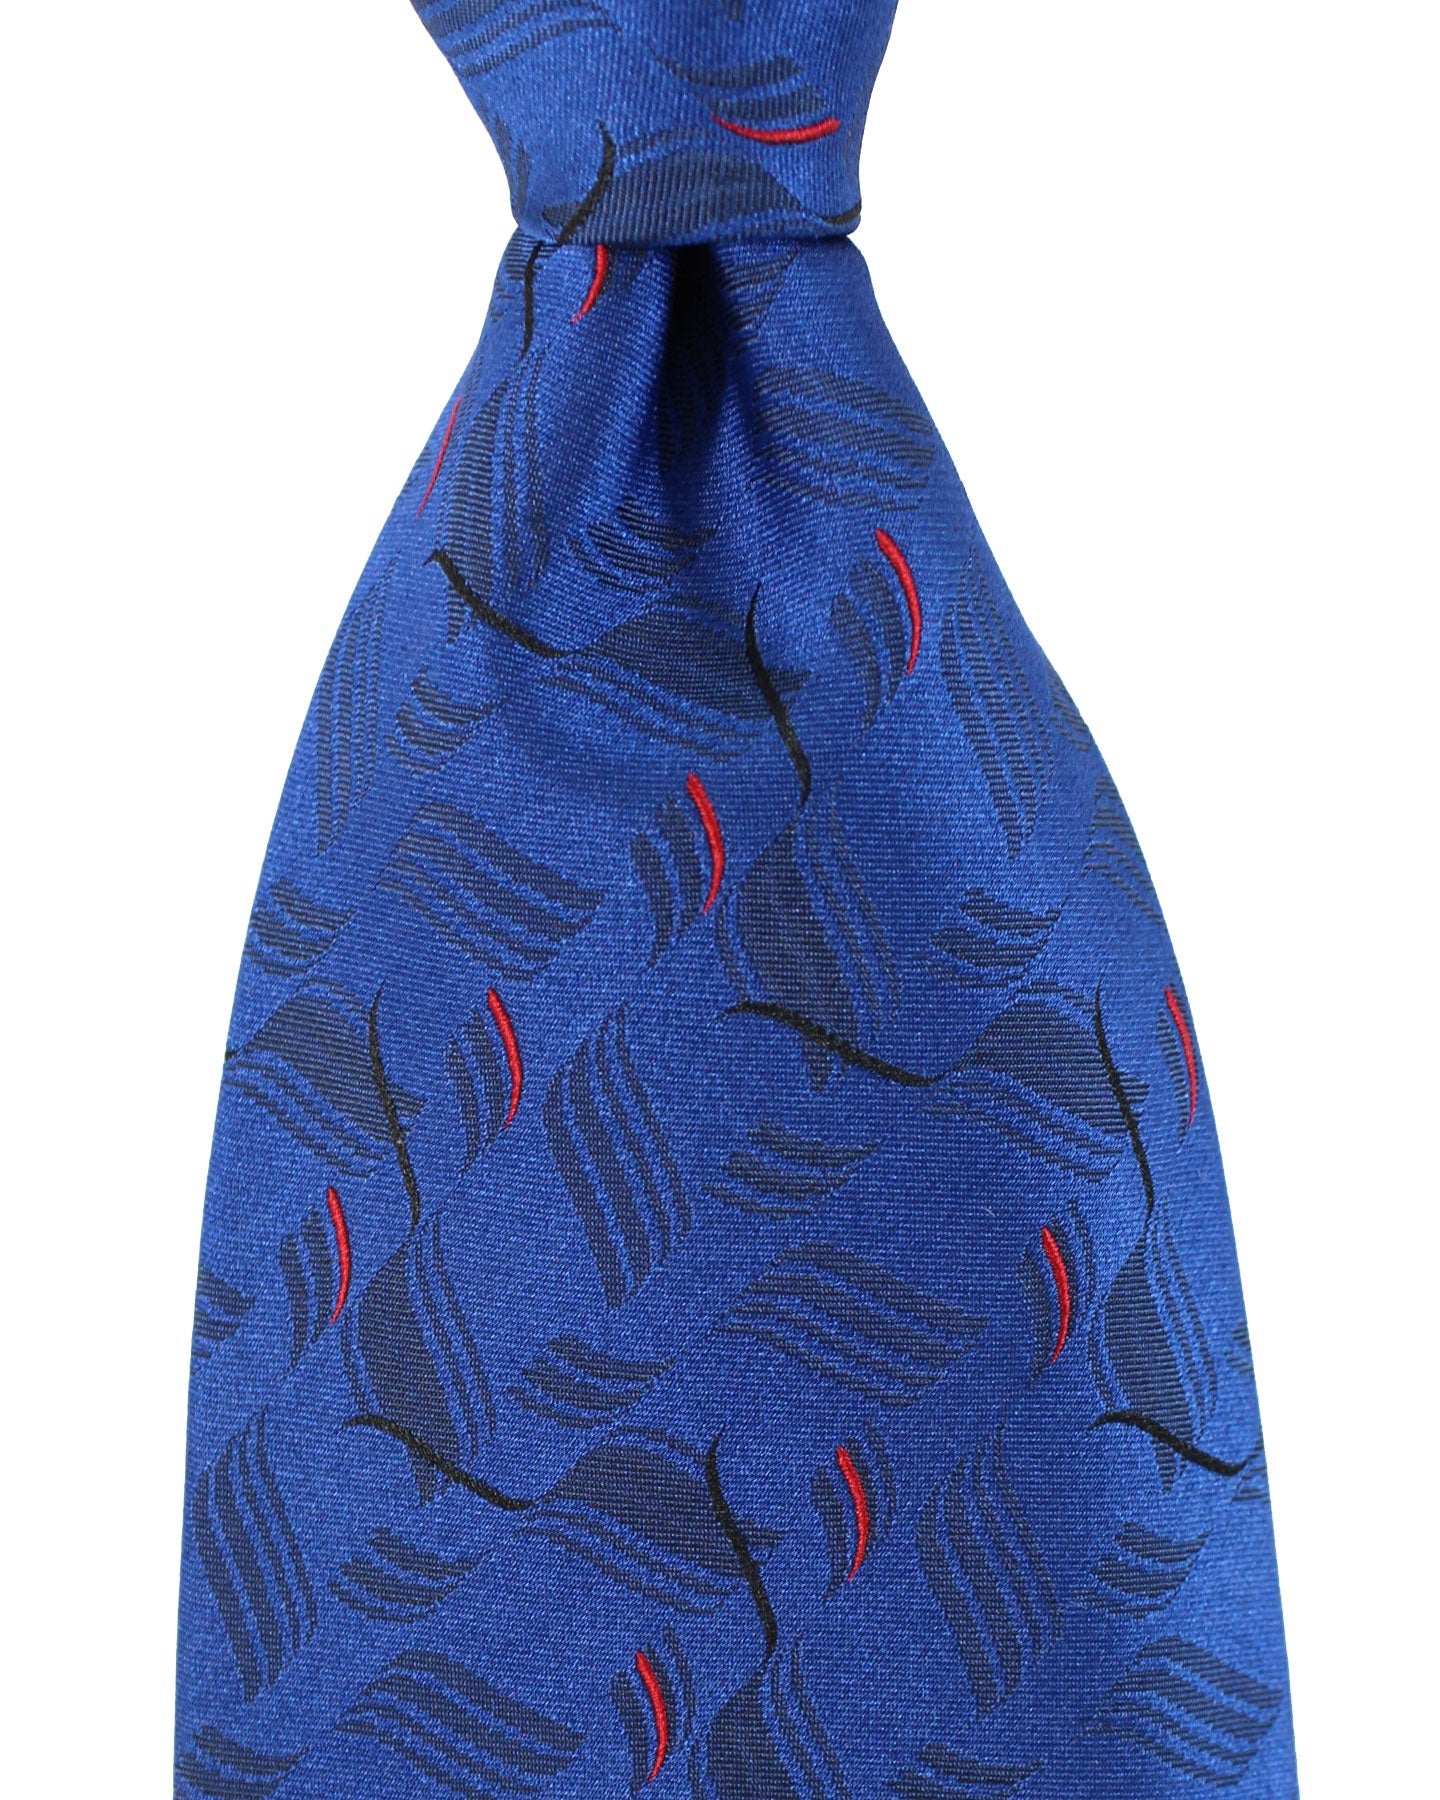 Zilli Silk Tie Dark Blue Red Design - Wide Necktie